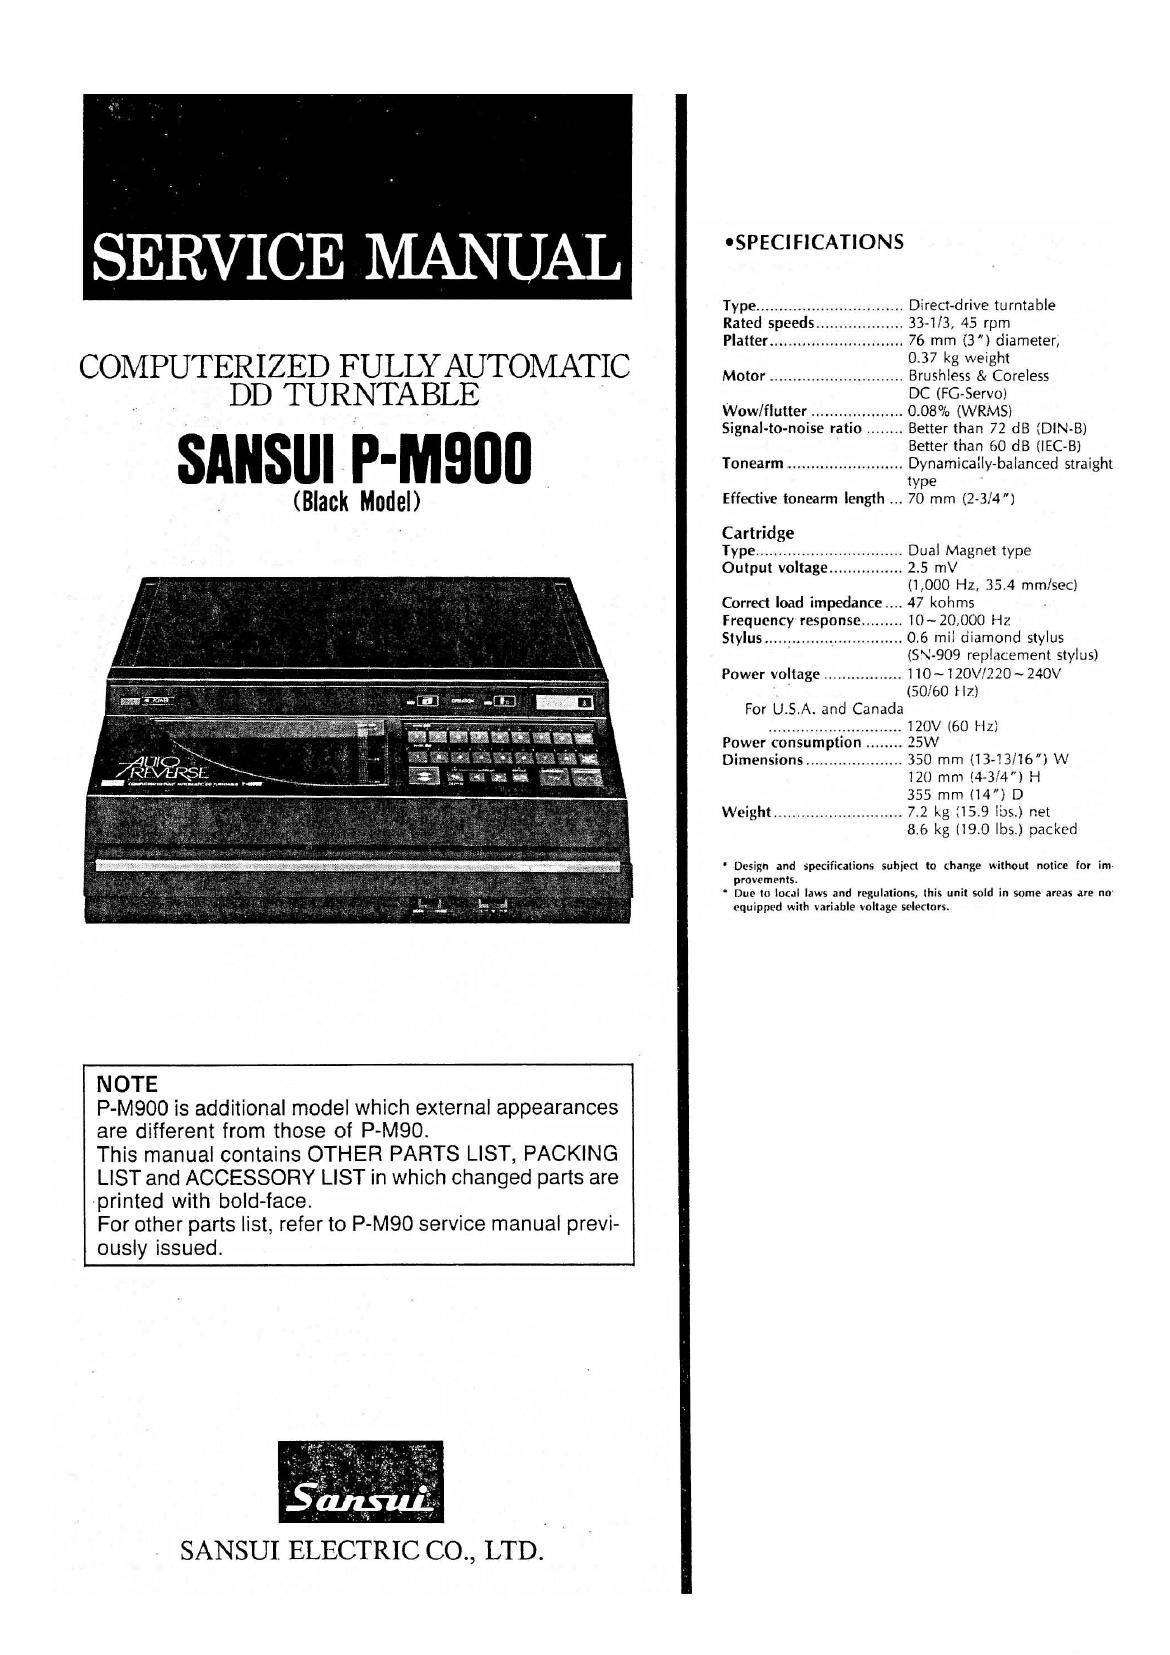 Sansui P-M900